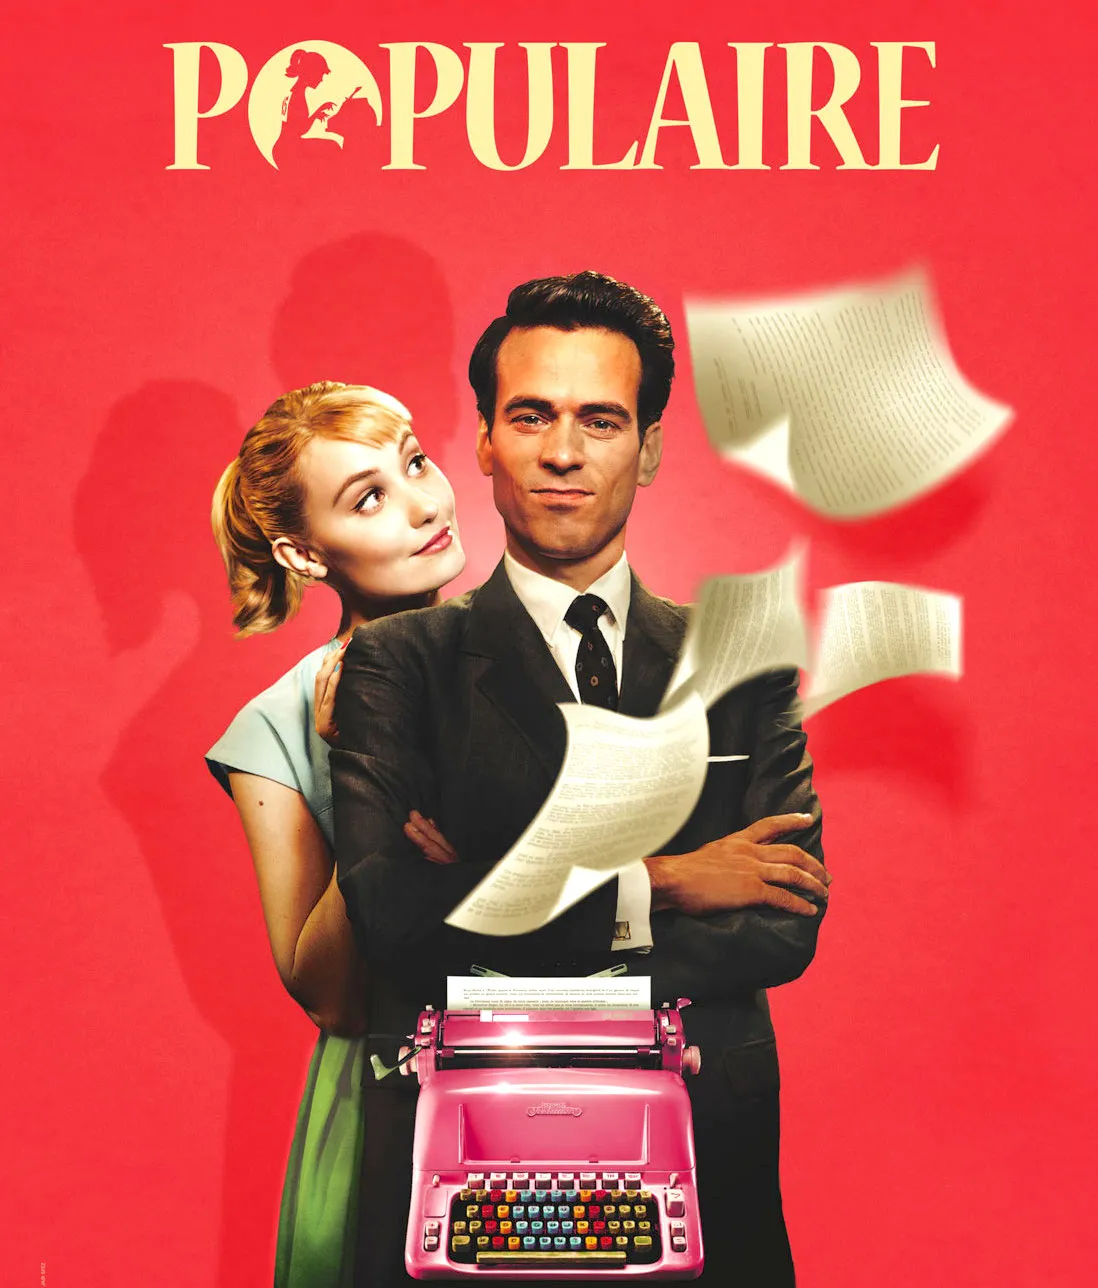 Populaire, crítica: elegancia, color y máquinas de escribir. Una historia sobre el éxito nos trae de vuelta a los maravillosos 60